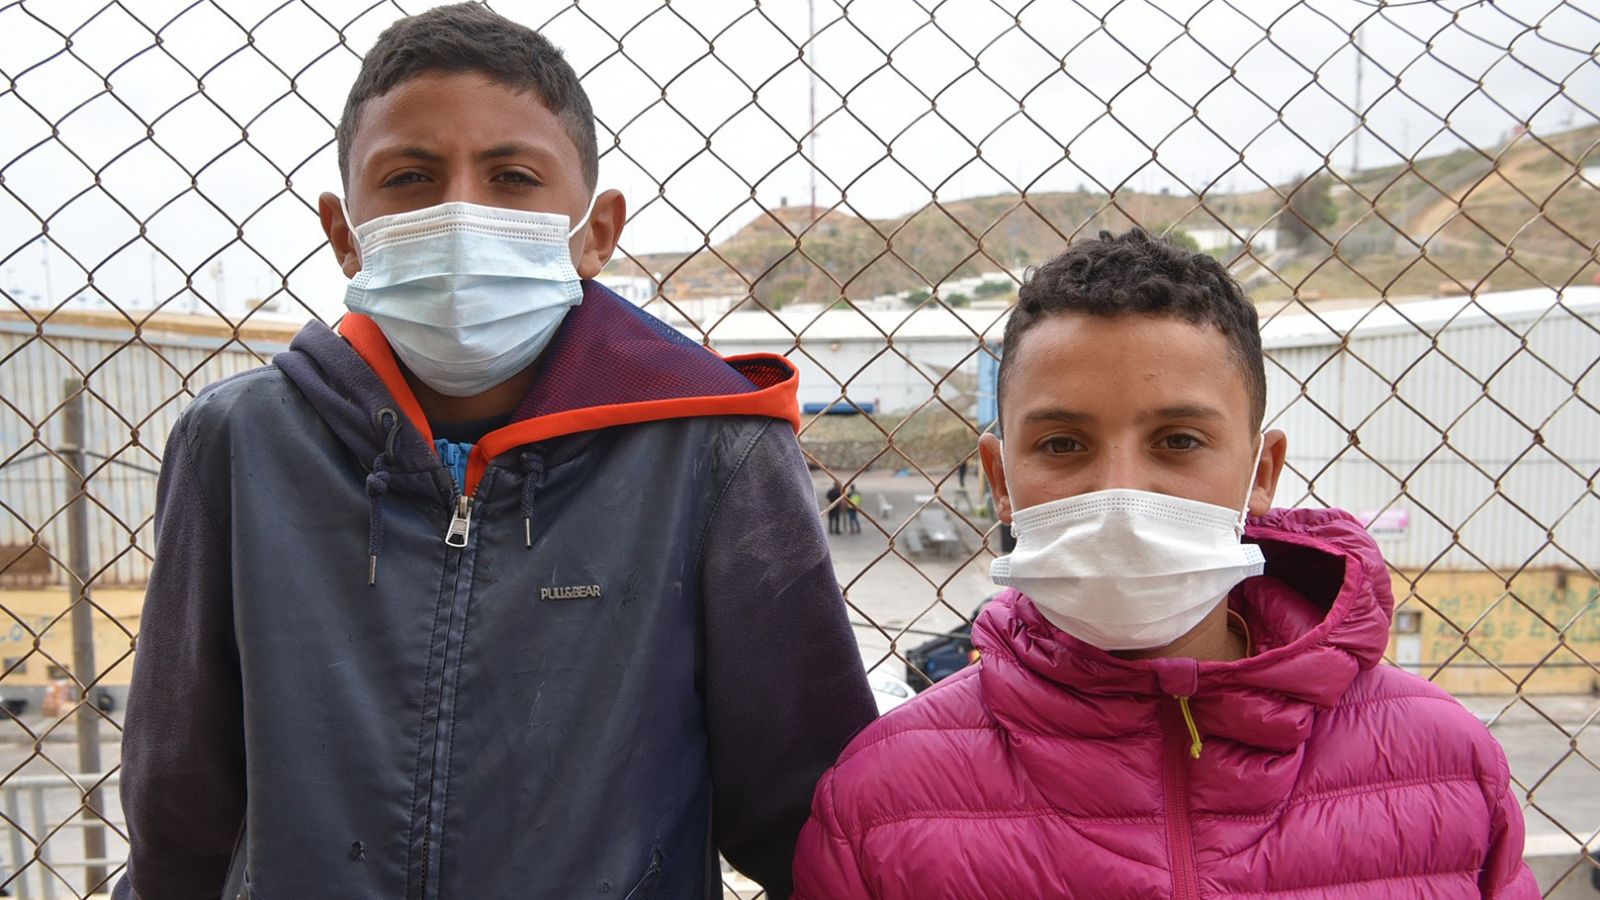 Aiman y Riduan, dos menores no acompañados deambulando en las calles de Ceuta